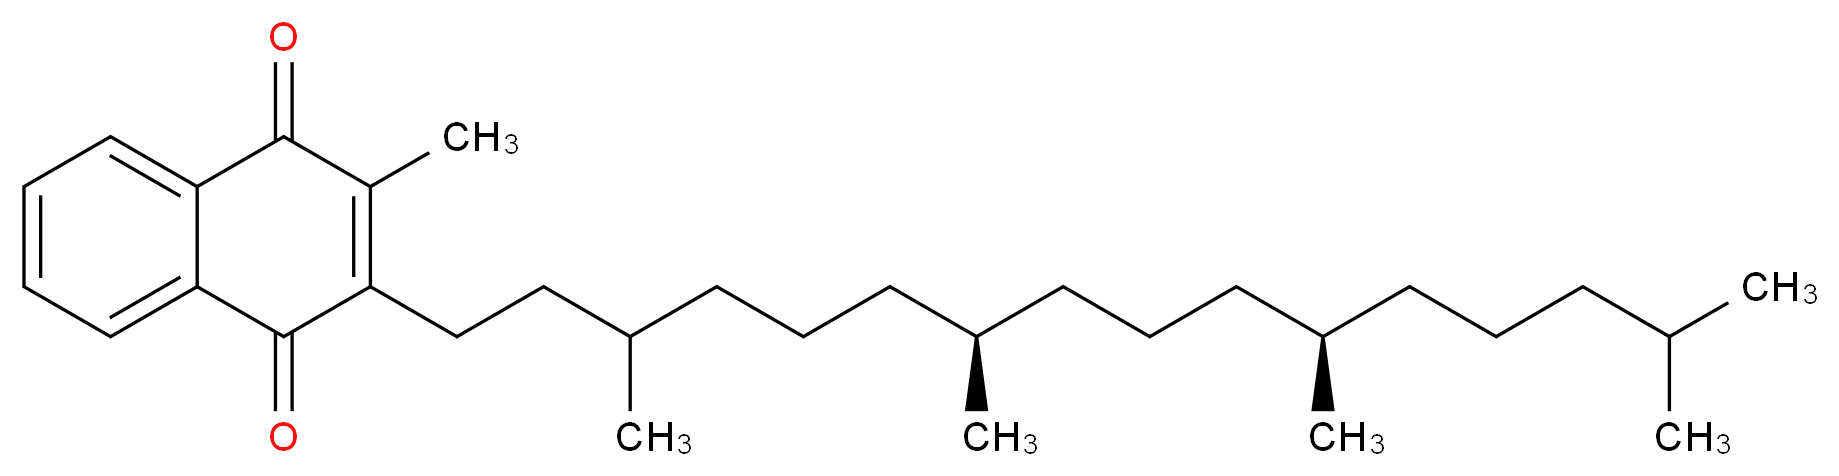 β,γ-Dihydro Vitamin K1_分子结构_CAS_64236-23-3)